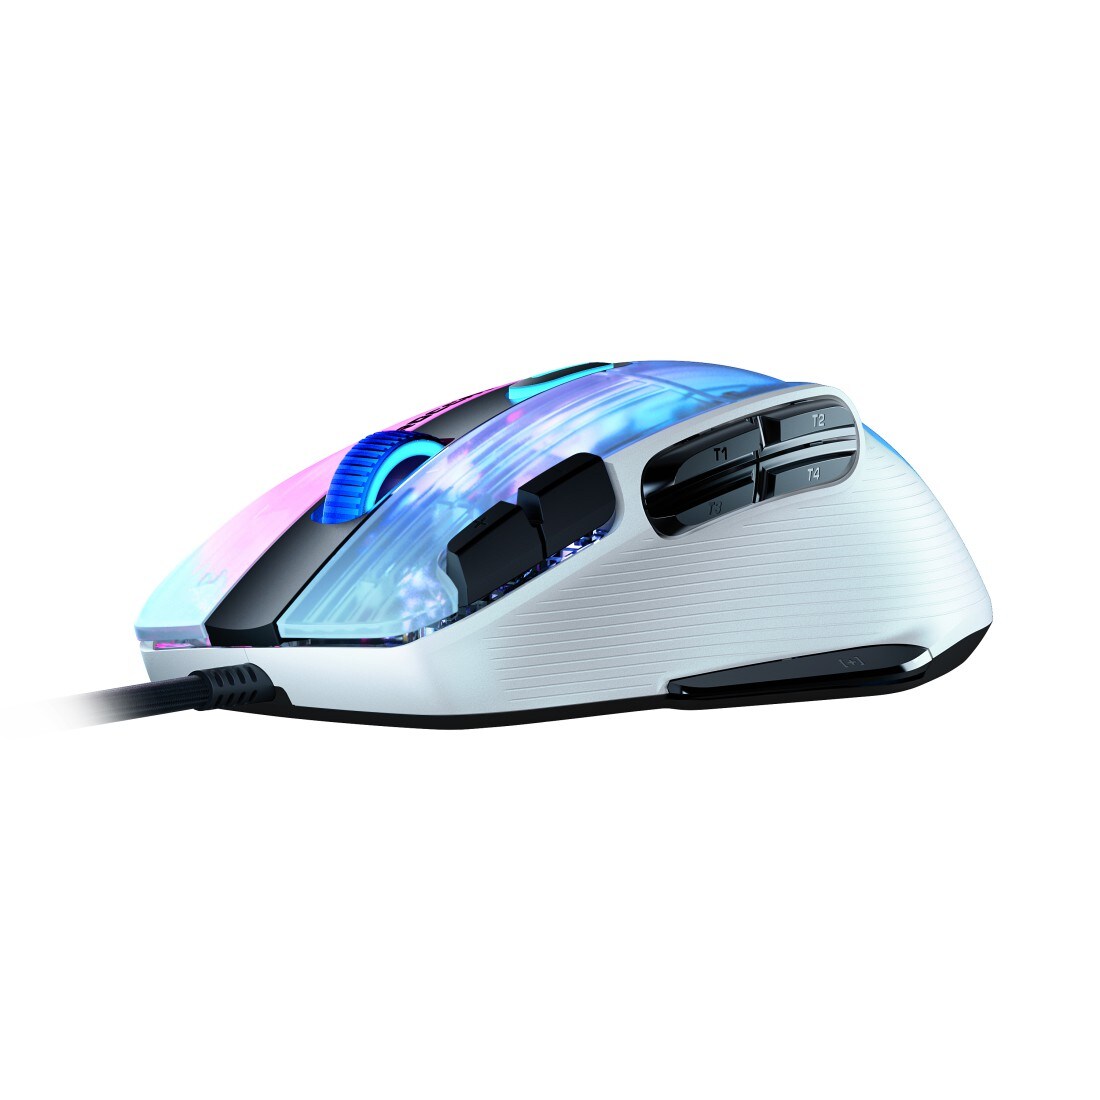 ROCCAT Kone XP Kabelgebundene Gaming Cyberport ++ Maus Weiß ROC-11-425-02